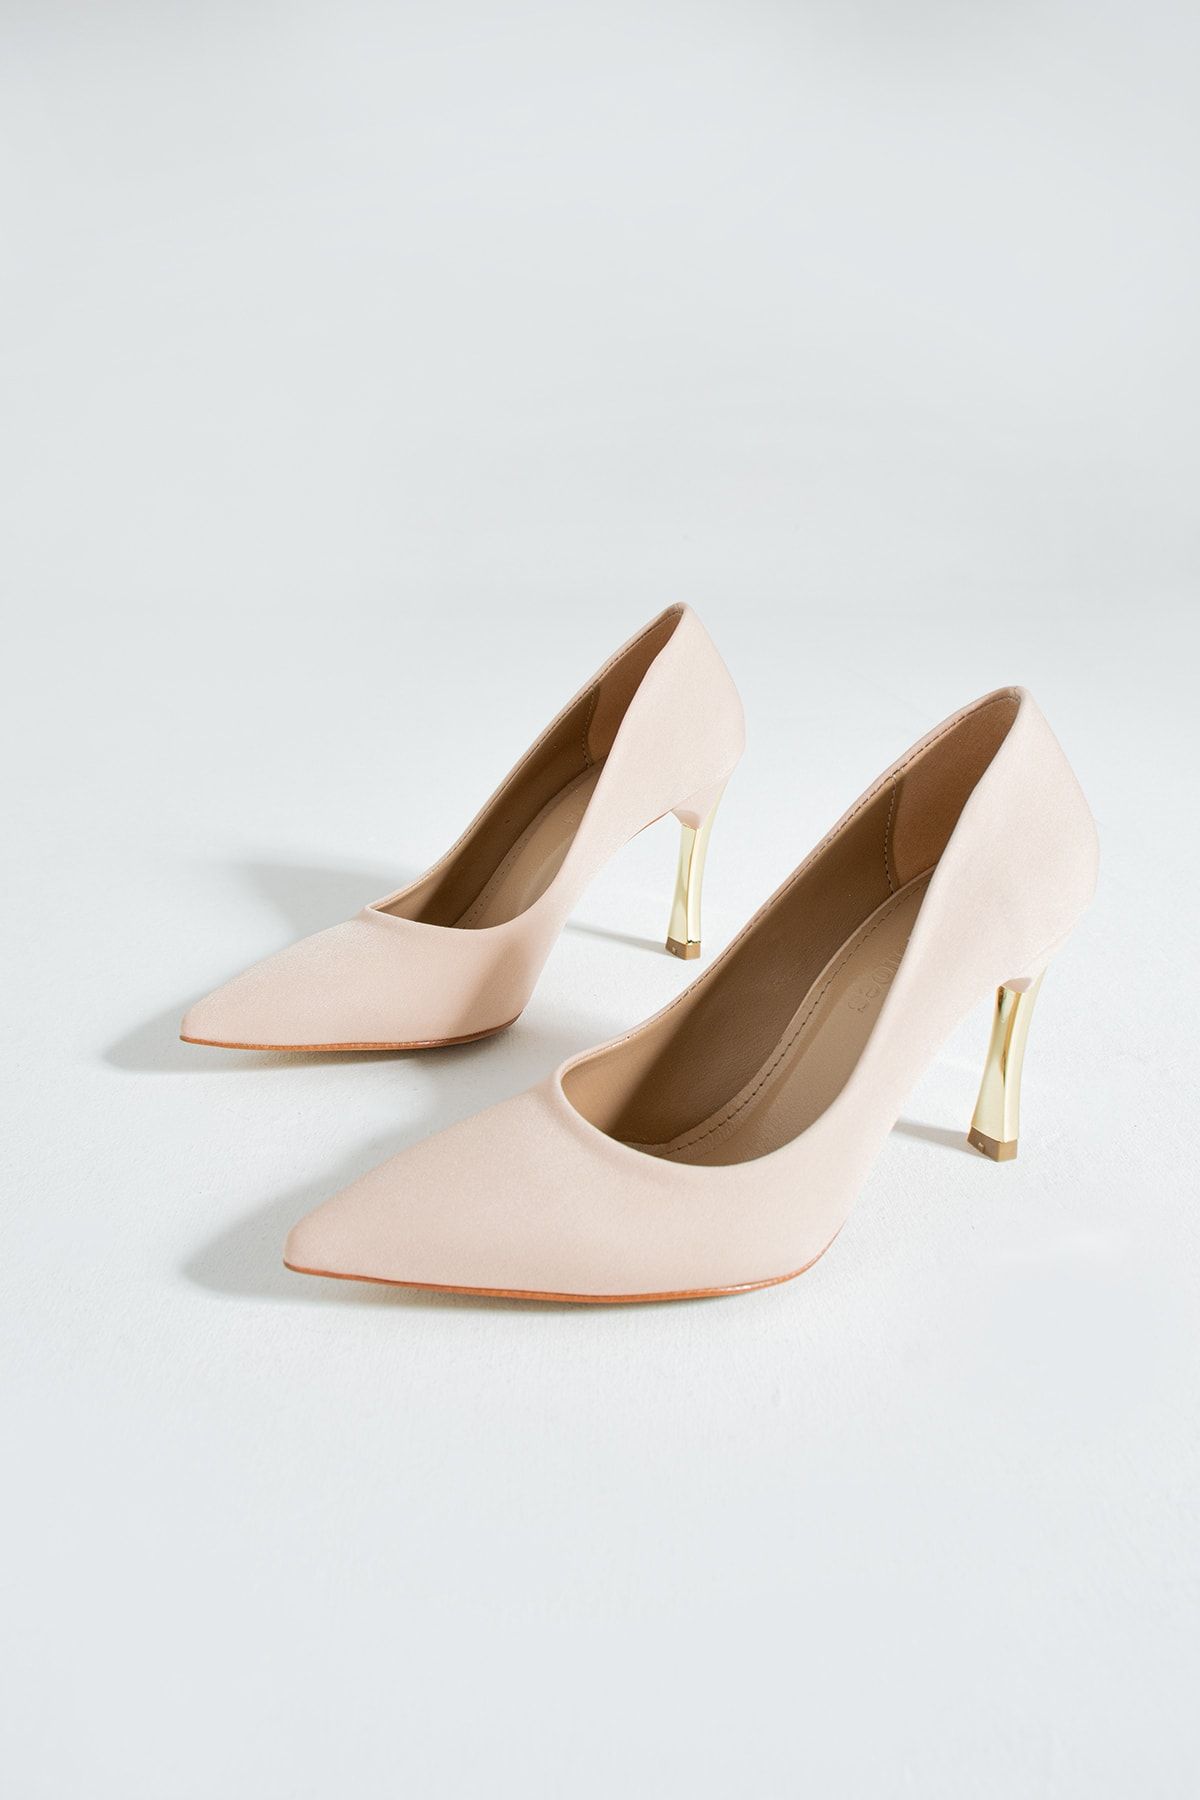 Güllü Shoes Kadın Topuklu Ayakkabı - Yüksek Topuklu Stiletto Rahat Şık Ve Ince Iş Ayakkabısı Bej Renk 9 Cm